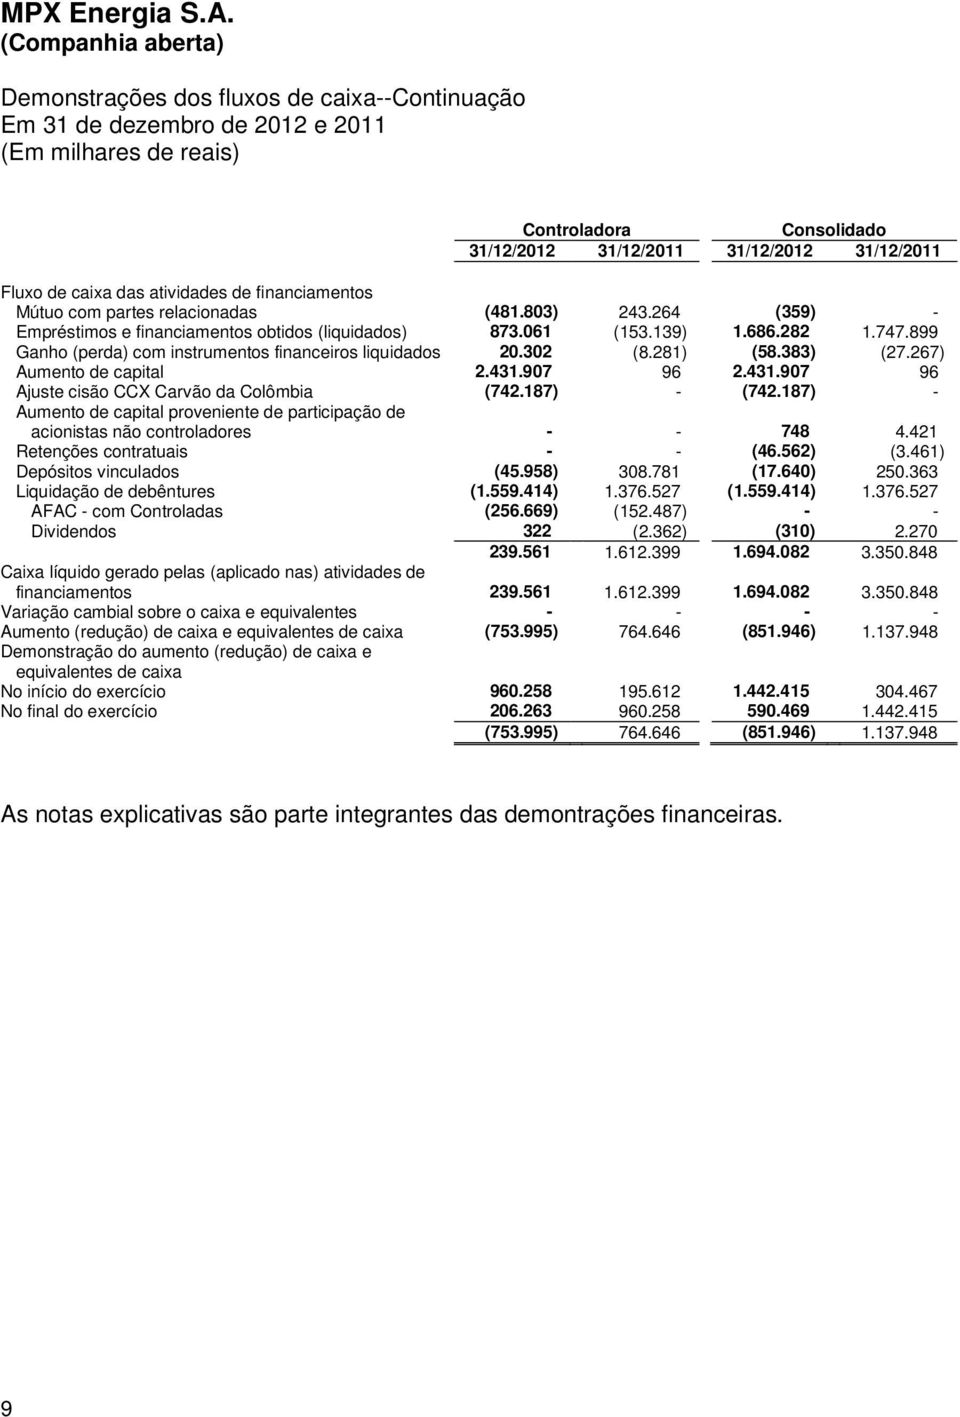 899 Ganho (perda) com instrumentos financeiros liquidados 20.302 (8.281) (58.383) (27.267) Aumento de capital 2.431.907 96 2.431.907 96 Ajuste cisão CCX Carvão da Colômbia (742.187) - (742.